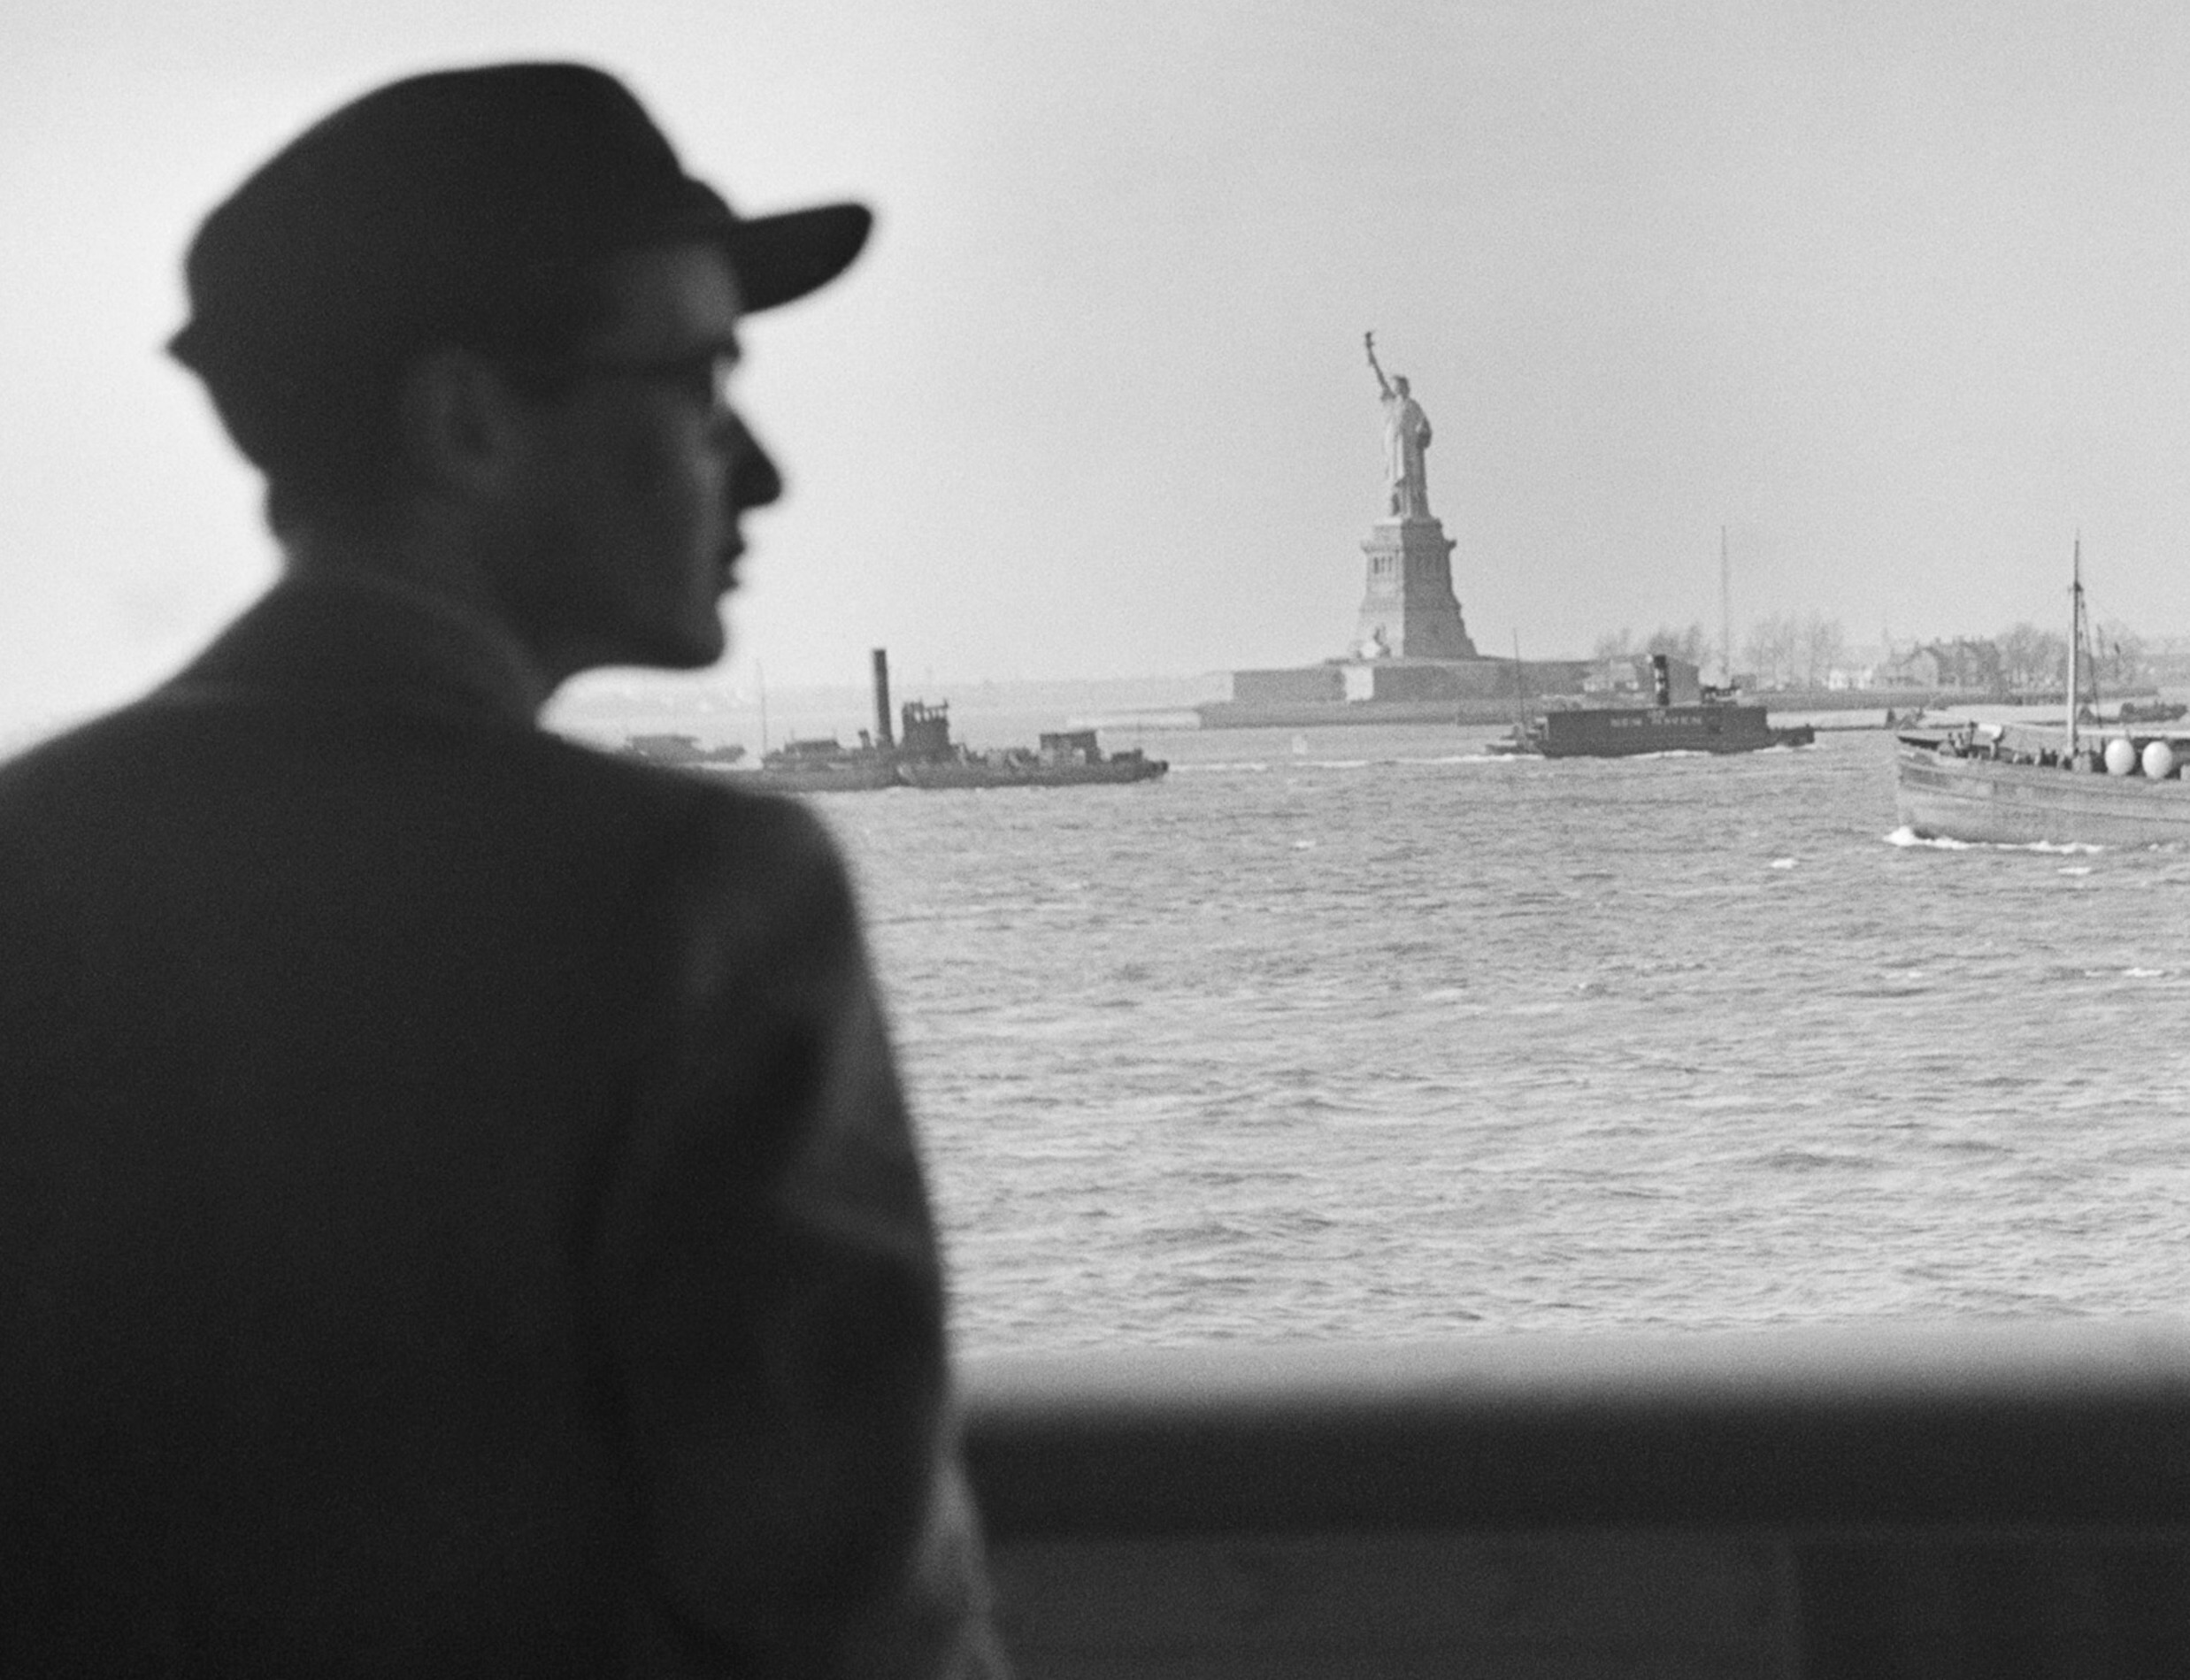 Вольф Вишняк прибывает со своей семьей в гавань Нью-Йорка на пароходе S.S. Siboney, Нью-Йорк, 31 декабря 1940 г. Фотограф Роман Вишняк